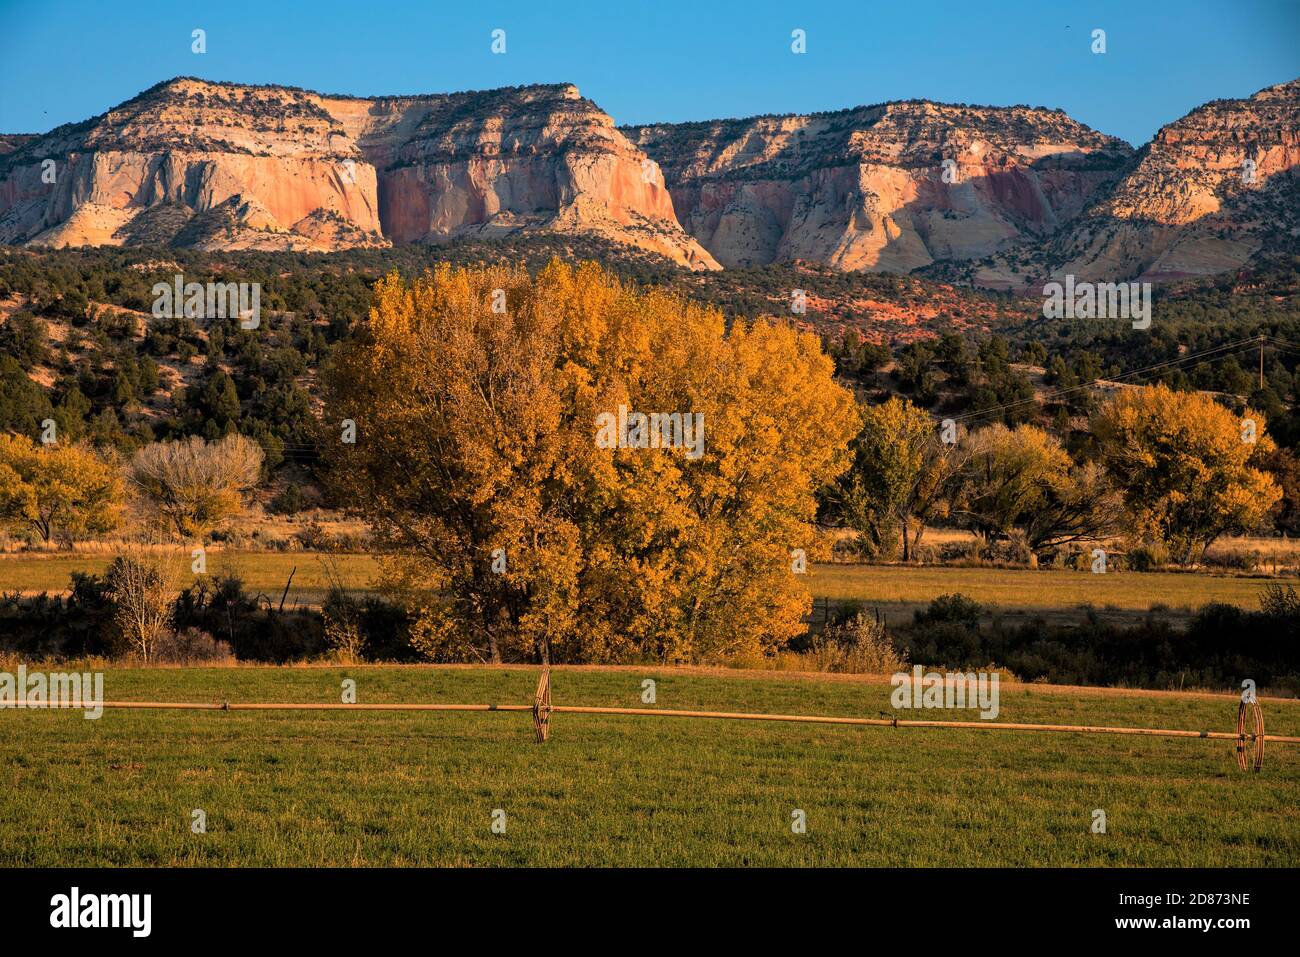 Paunsaugunt Plateau im Süden von Utah, USA. Eine schöne und zerklüftete Bergplateau bekannt für seine geologische Vielfalt und Tierwelt. Stockfoto